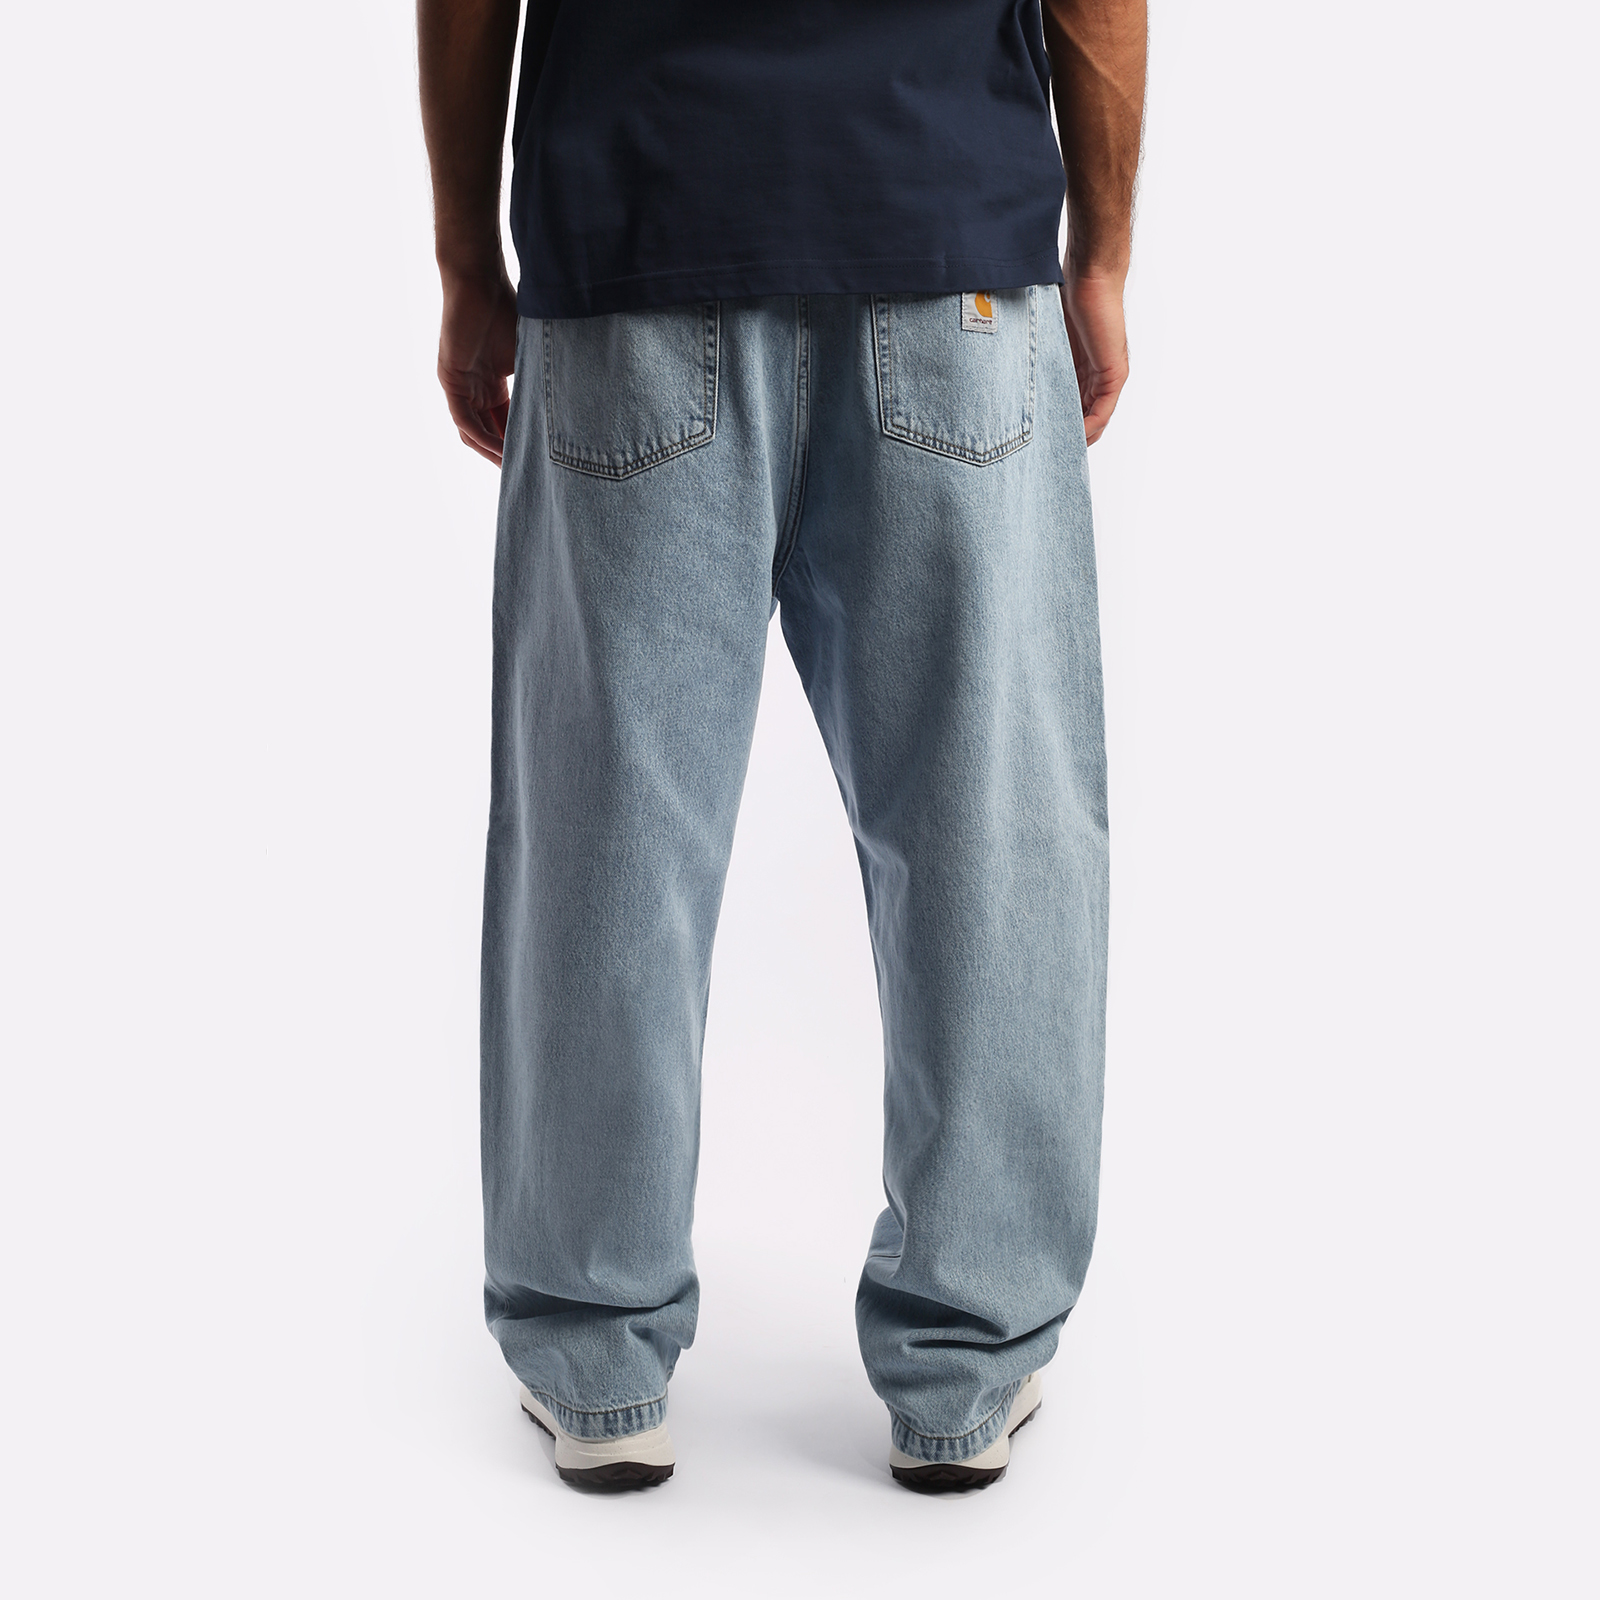 мужские брюки Carhartt WIP Robertson  (I030468-blue)  - цена, описание, фото 2